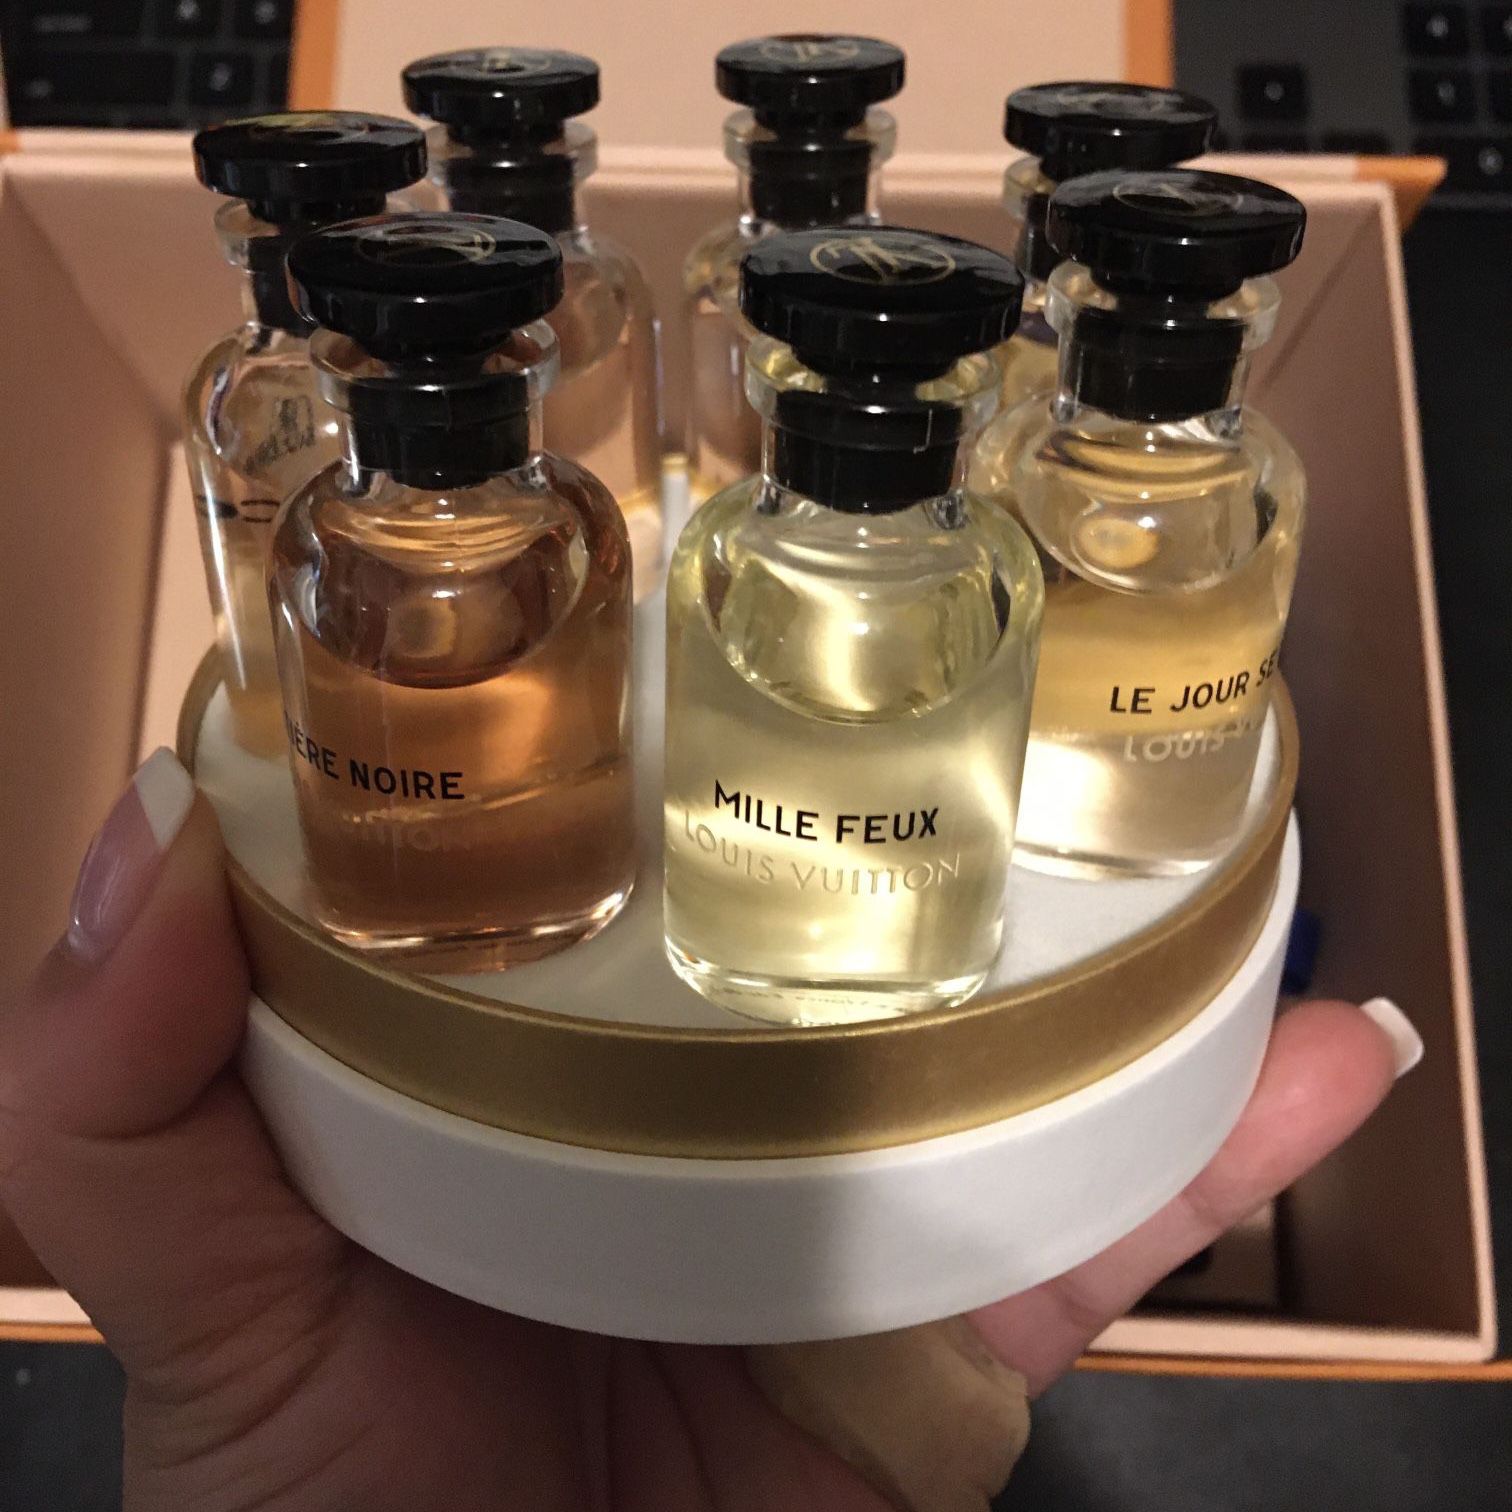 Louis Vuitton Perfume Travel Set